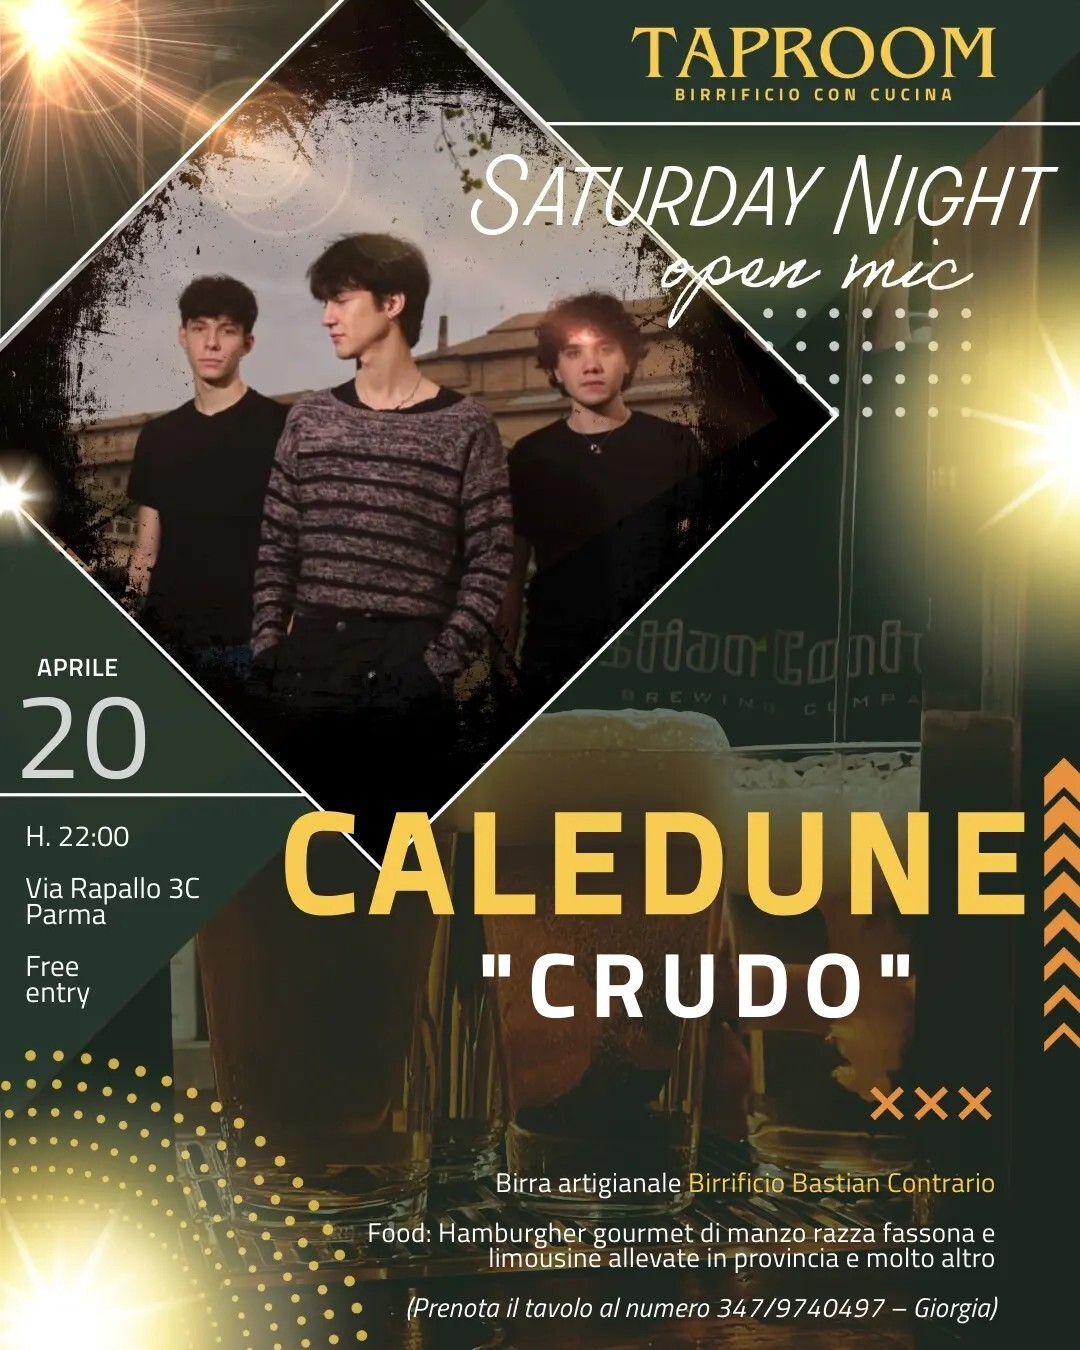 Saturday night open mic alla TAPROOM B.C  in compagnia dei Caledune "Crudo"